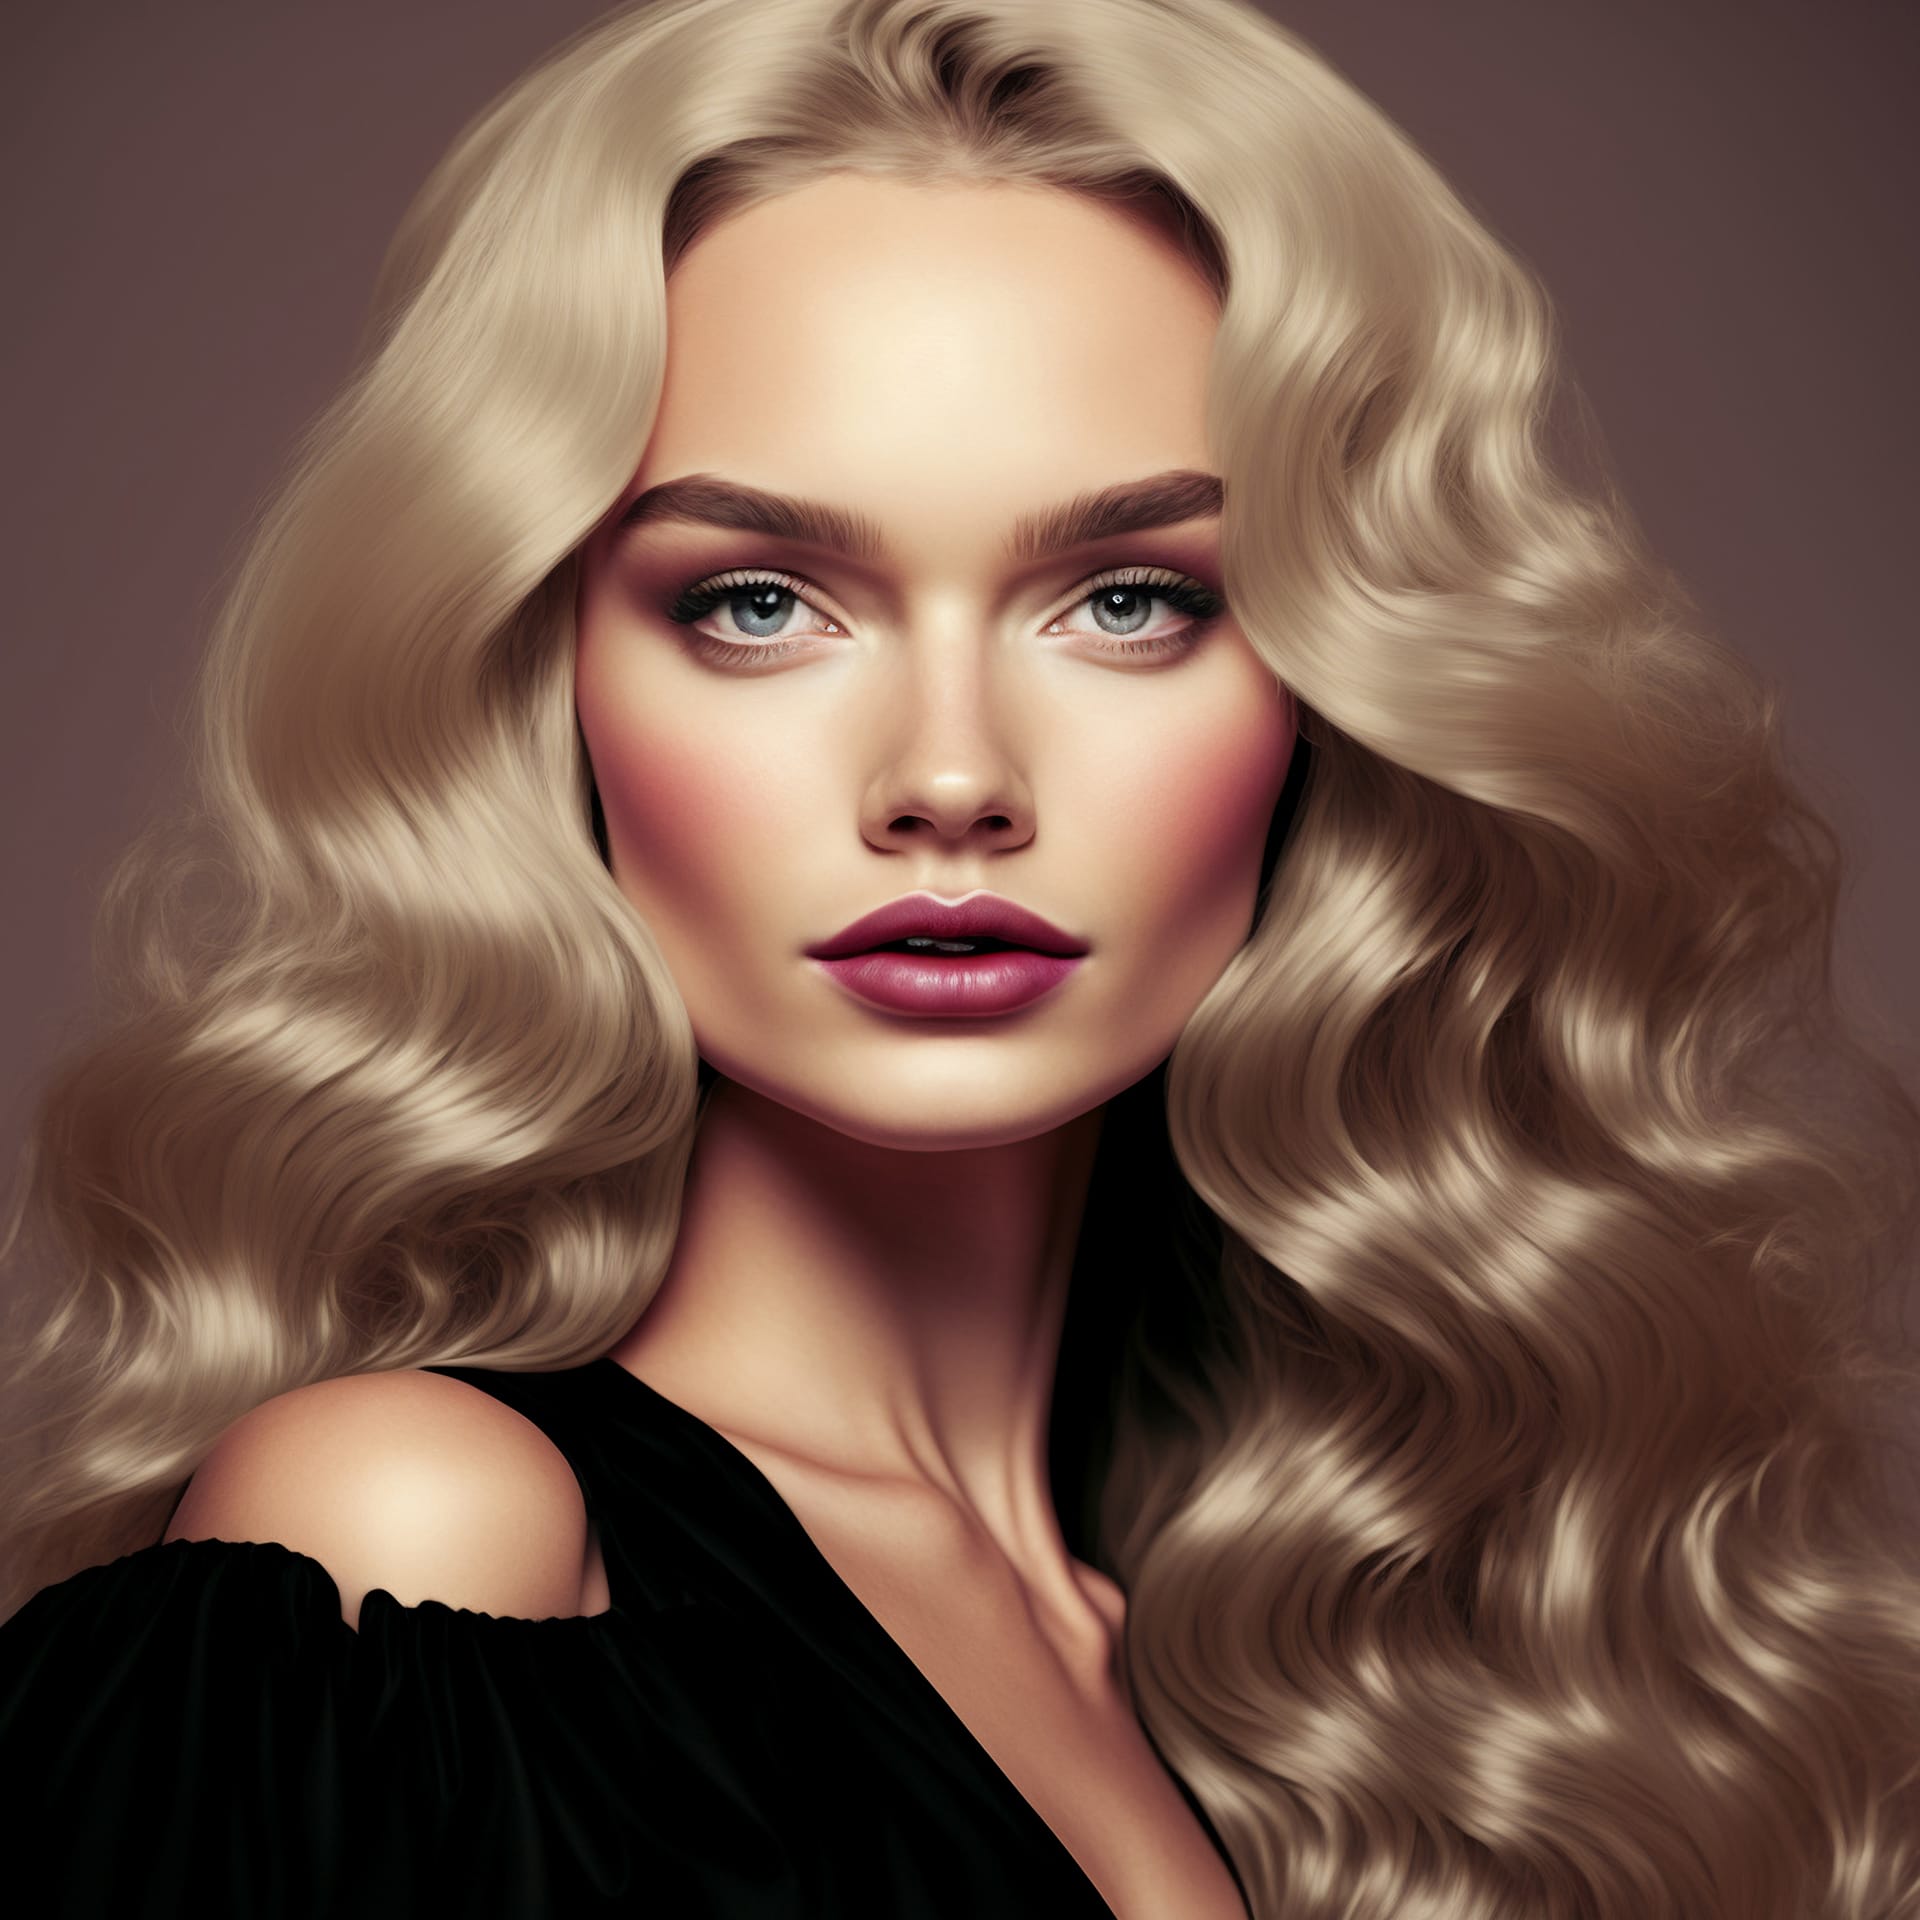 Digital portrait gorgeous elegant blonde woman creative digital illustration painting picture